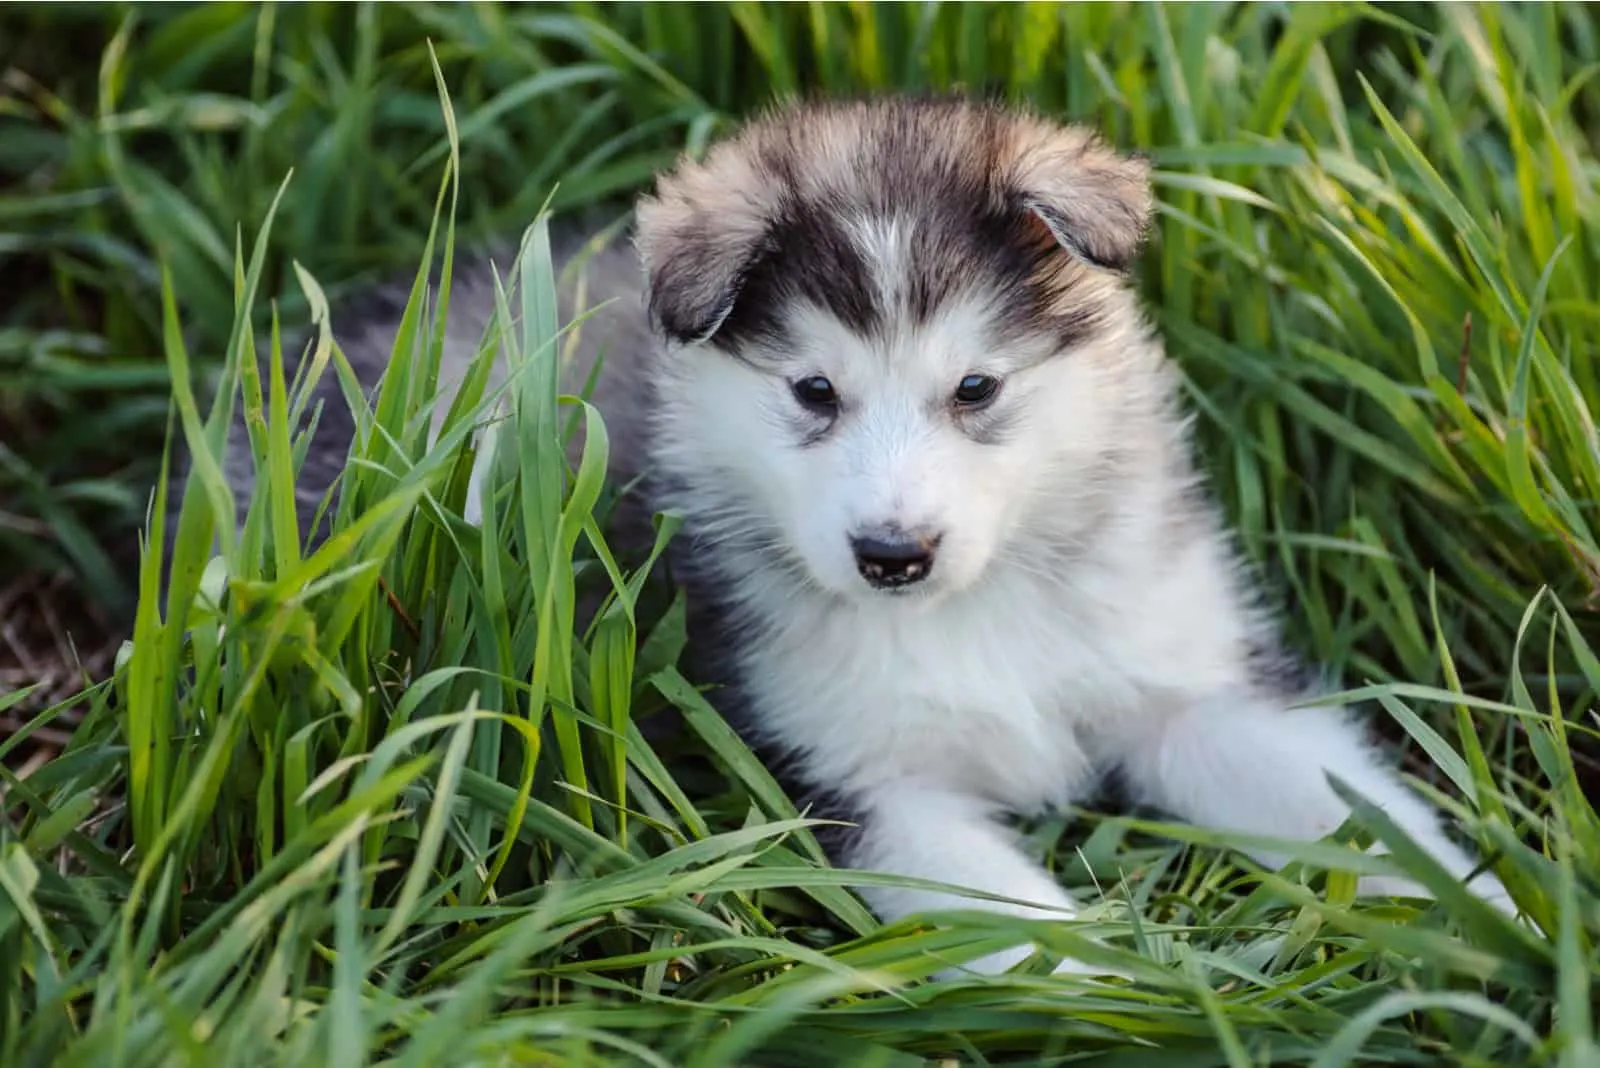 cute puppy of alaskan malamute dog in the grass